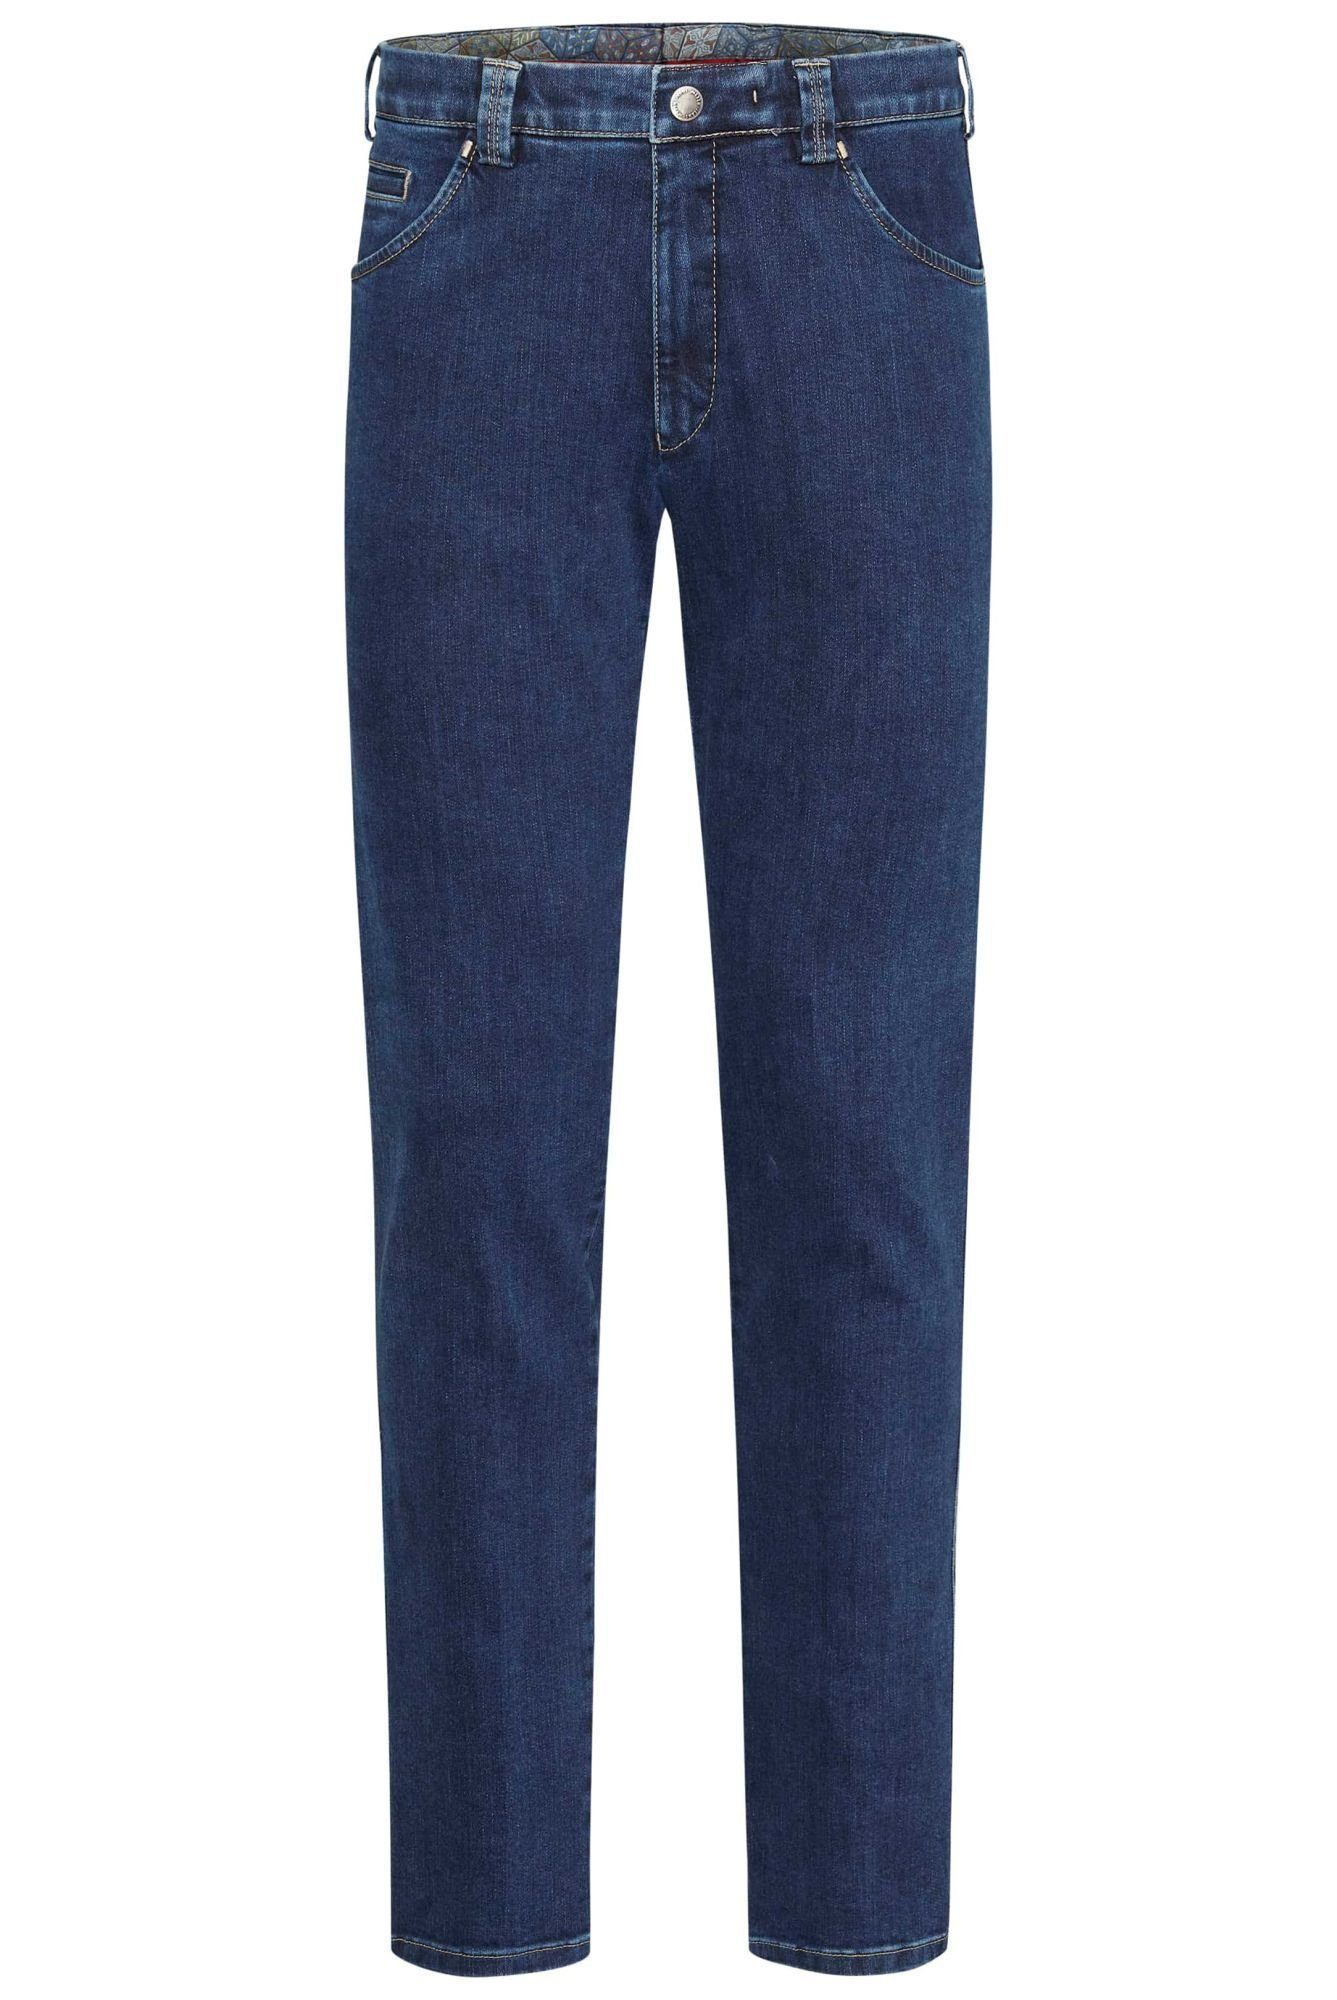 MEYER Slim-fit-Jeans Chino Dublin mit blau Stretch-Dehnbund